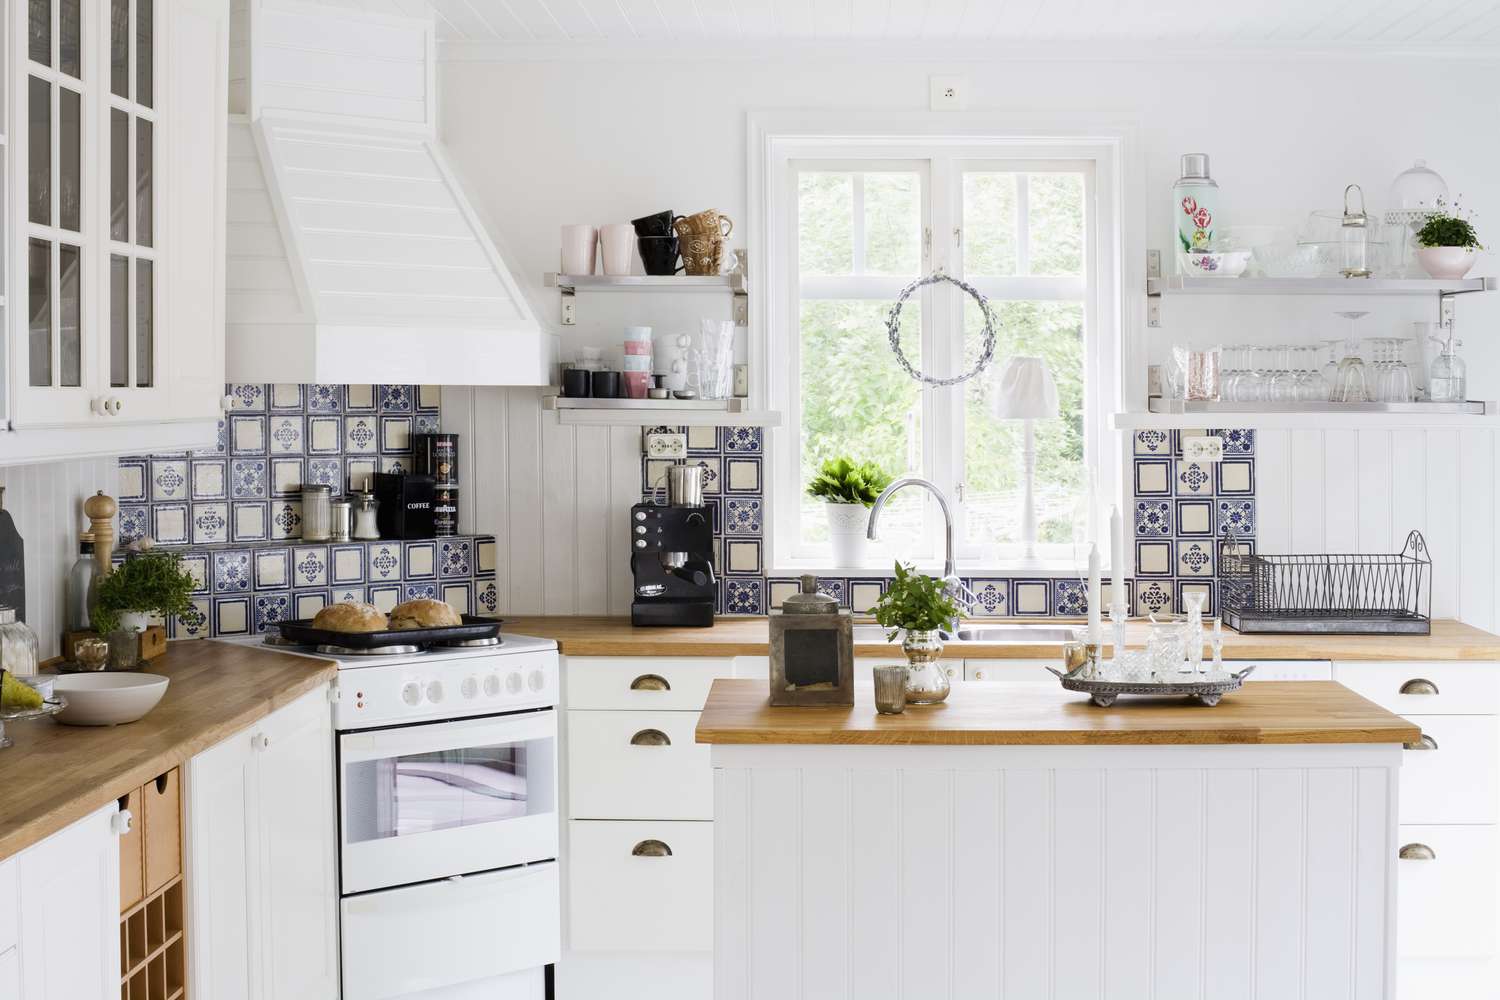 Una cocina blanca con luz, madera natural y detalles de azulejos azules